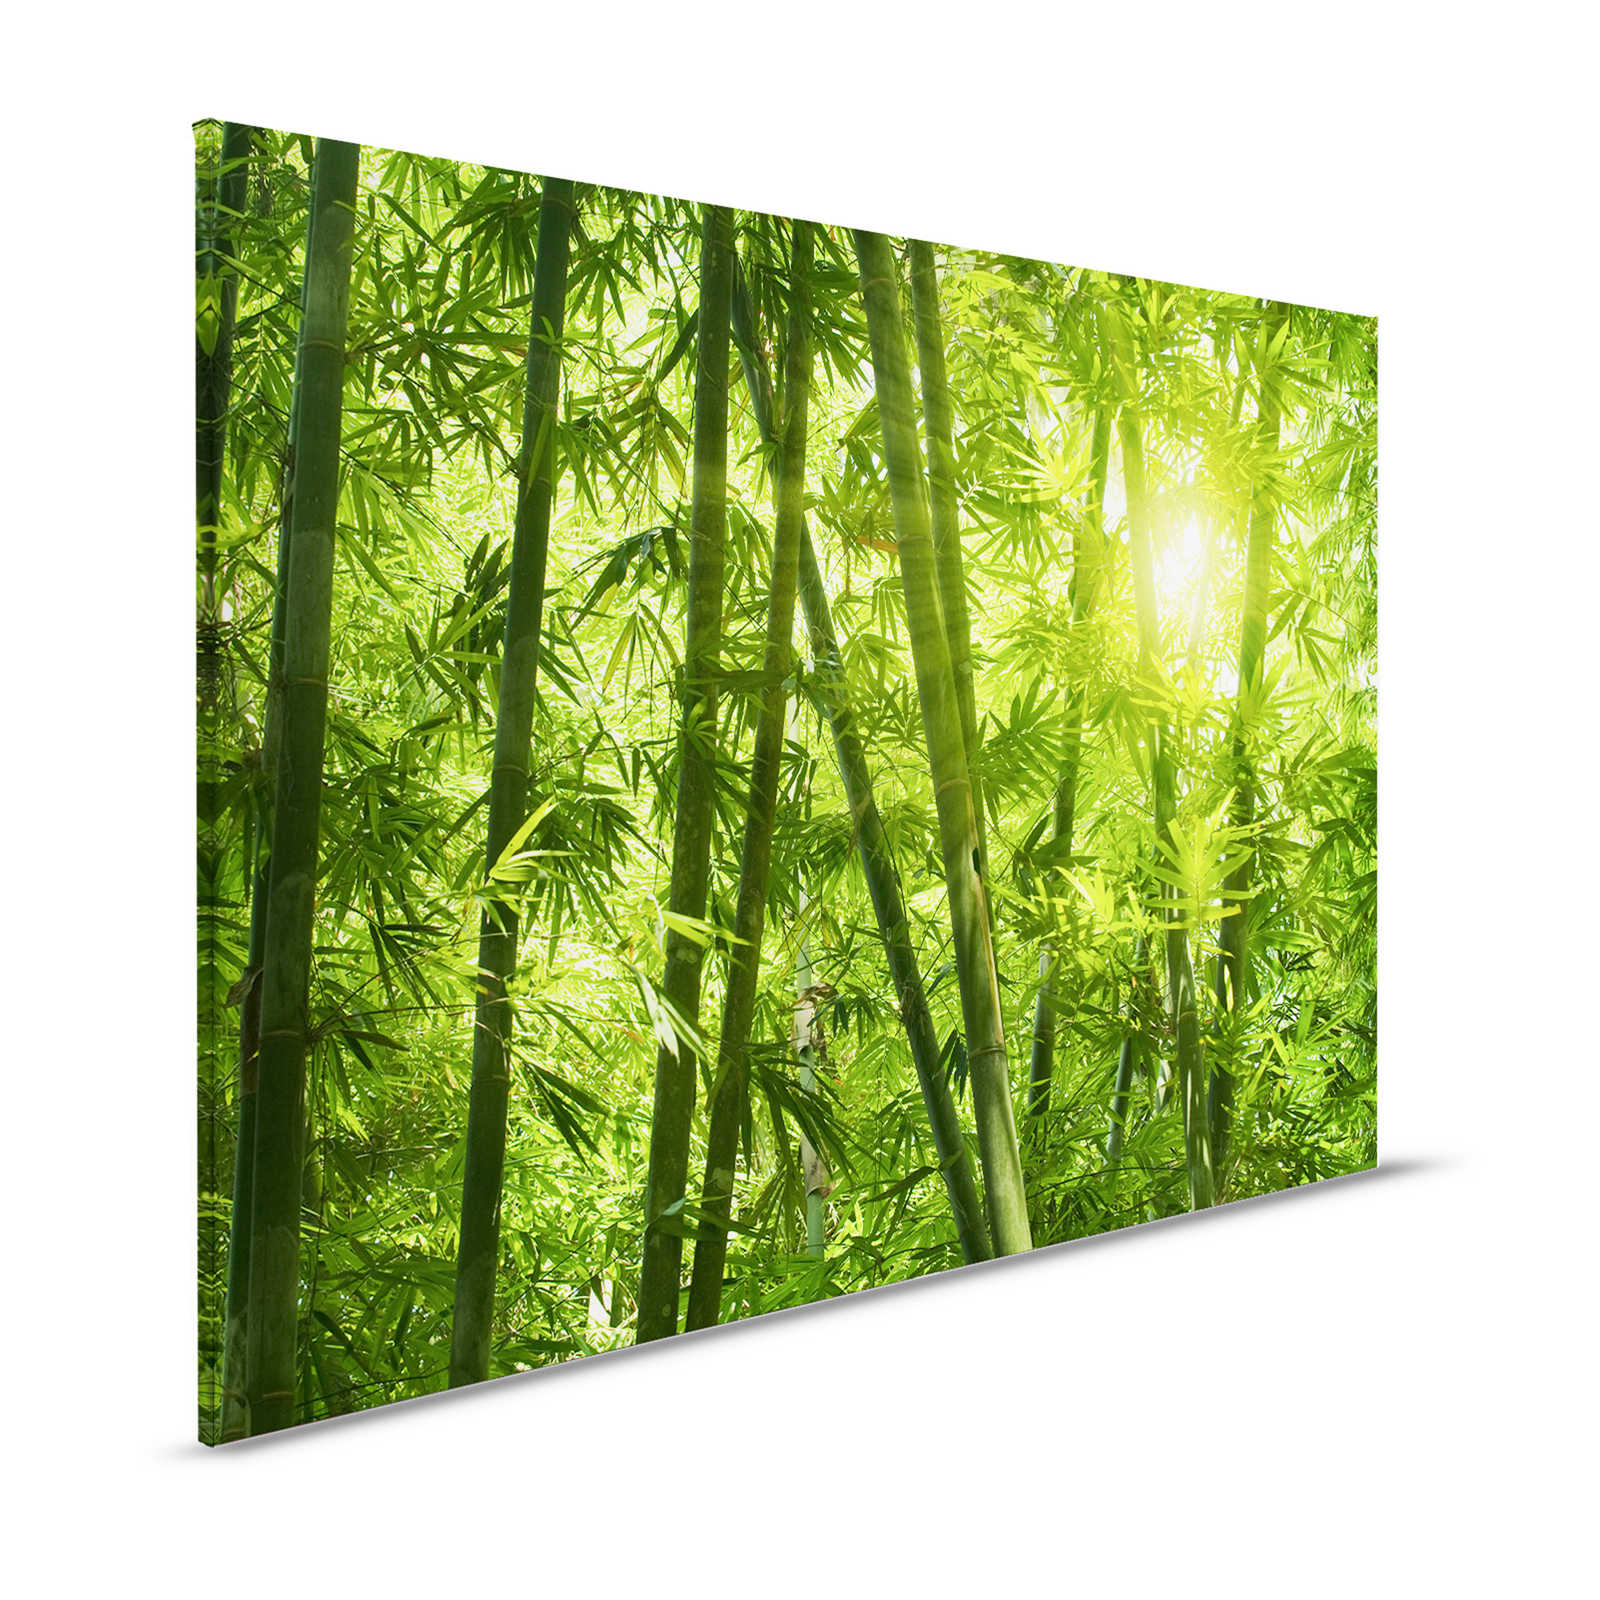 Leinwandbild Bambus und Blätter – 1,20 m x 0,80 m
